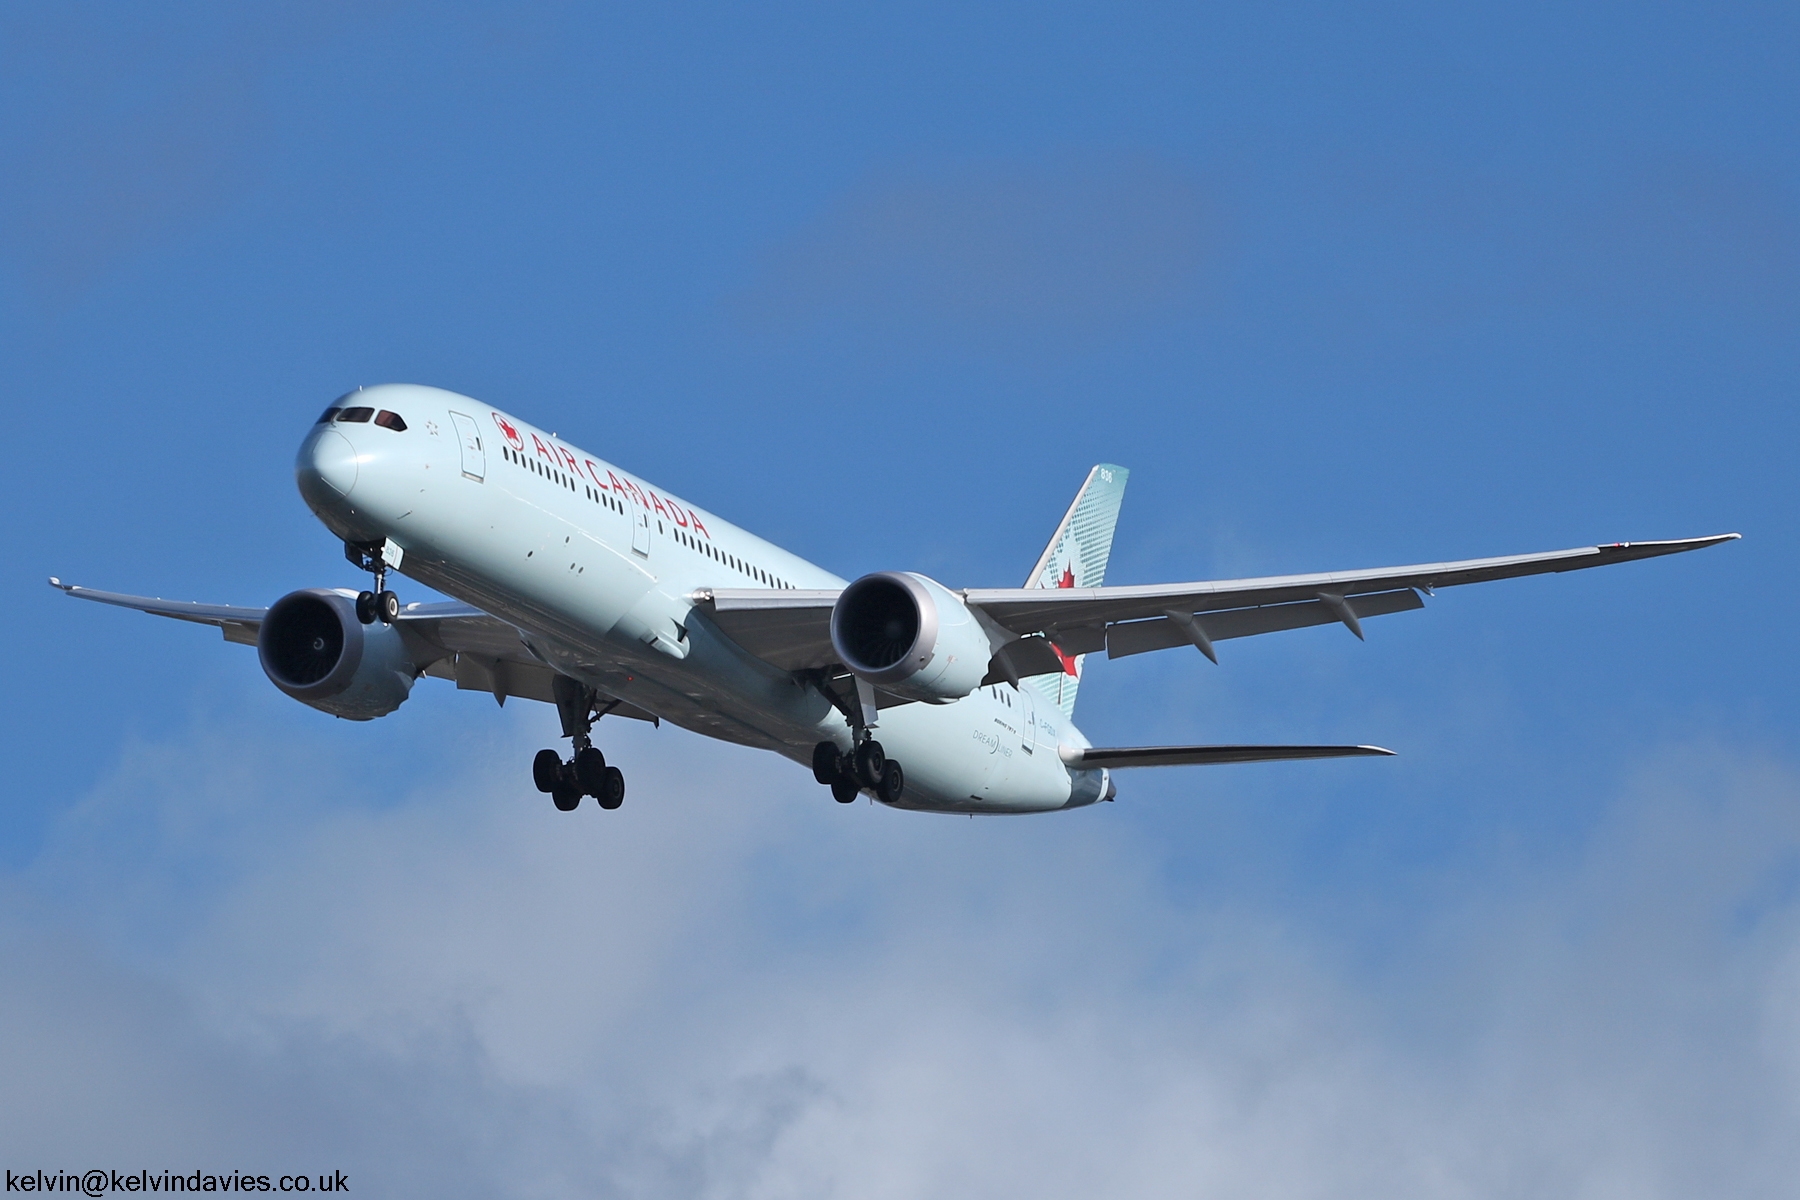 Air Canada 787 C-FGDX